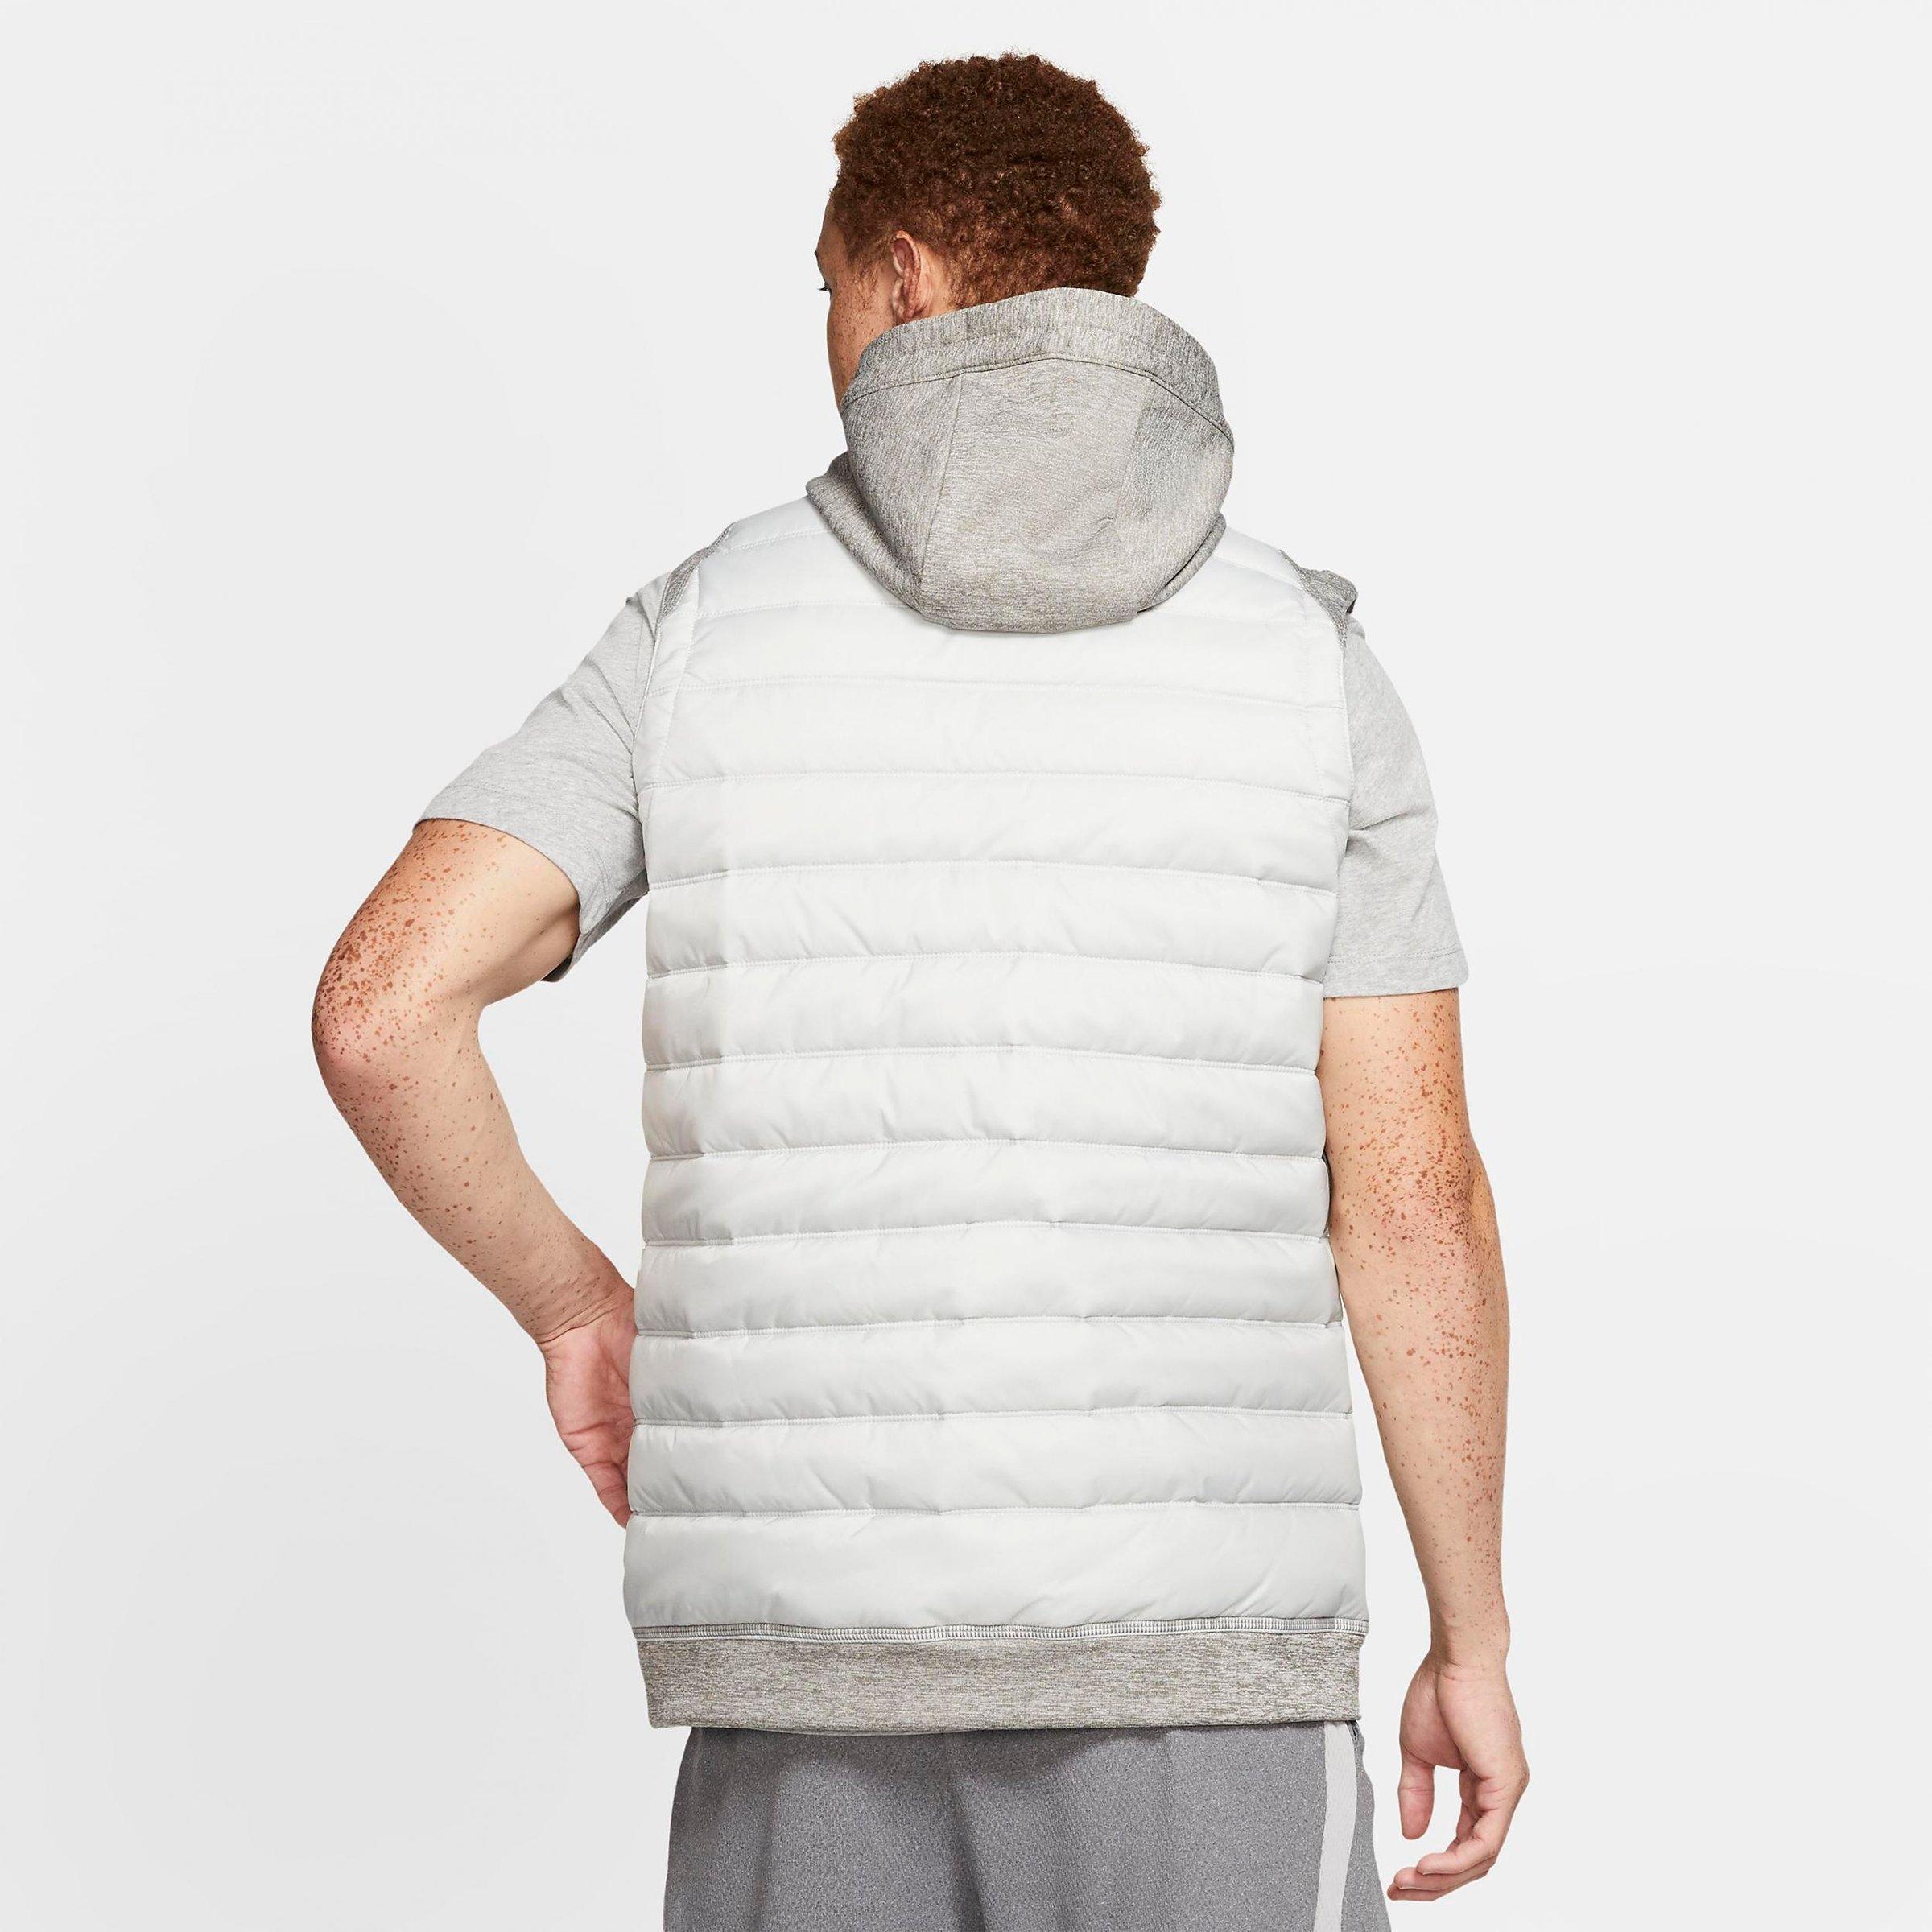 nike men's therma winterized full zip vest